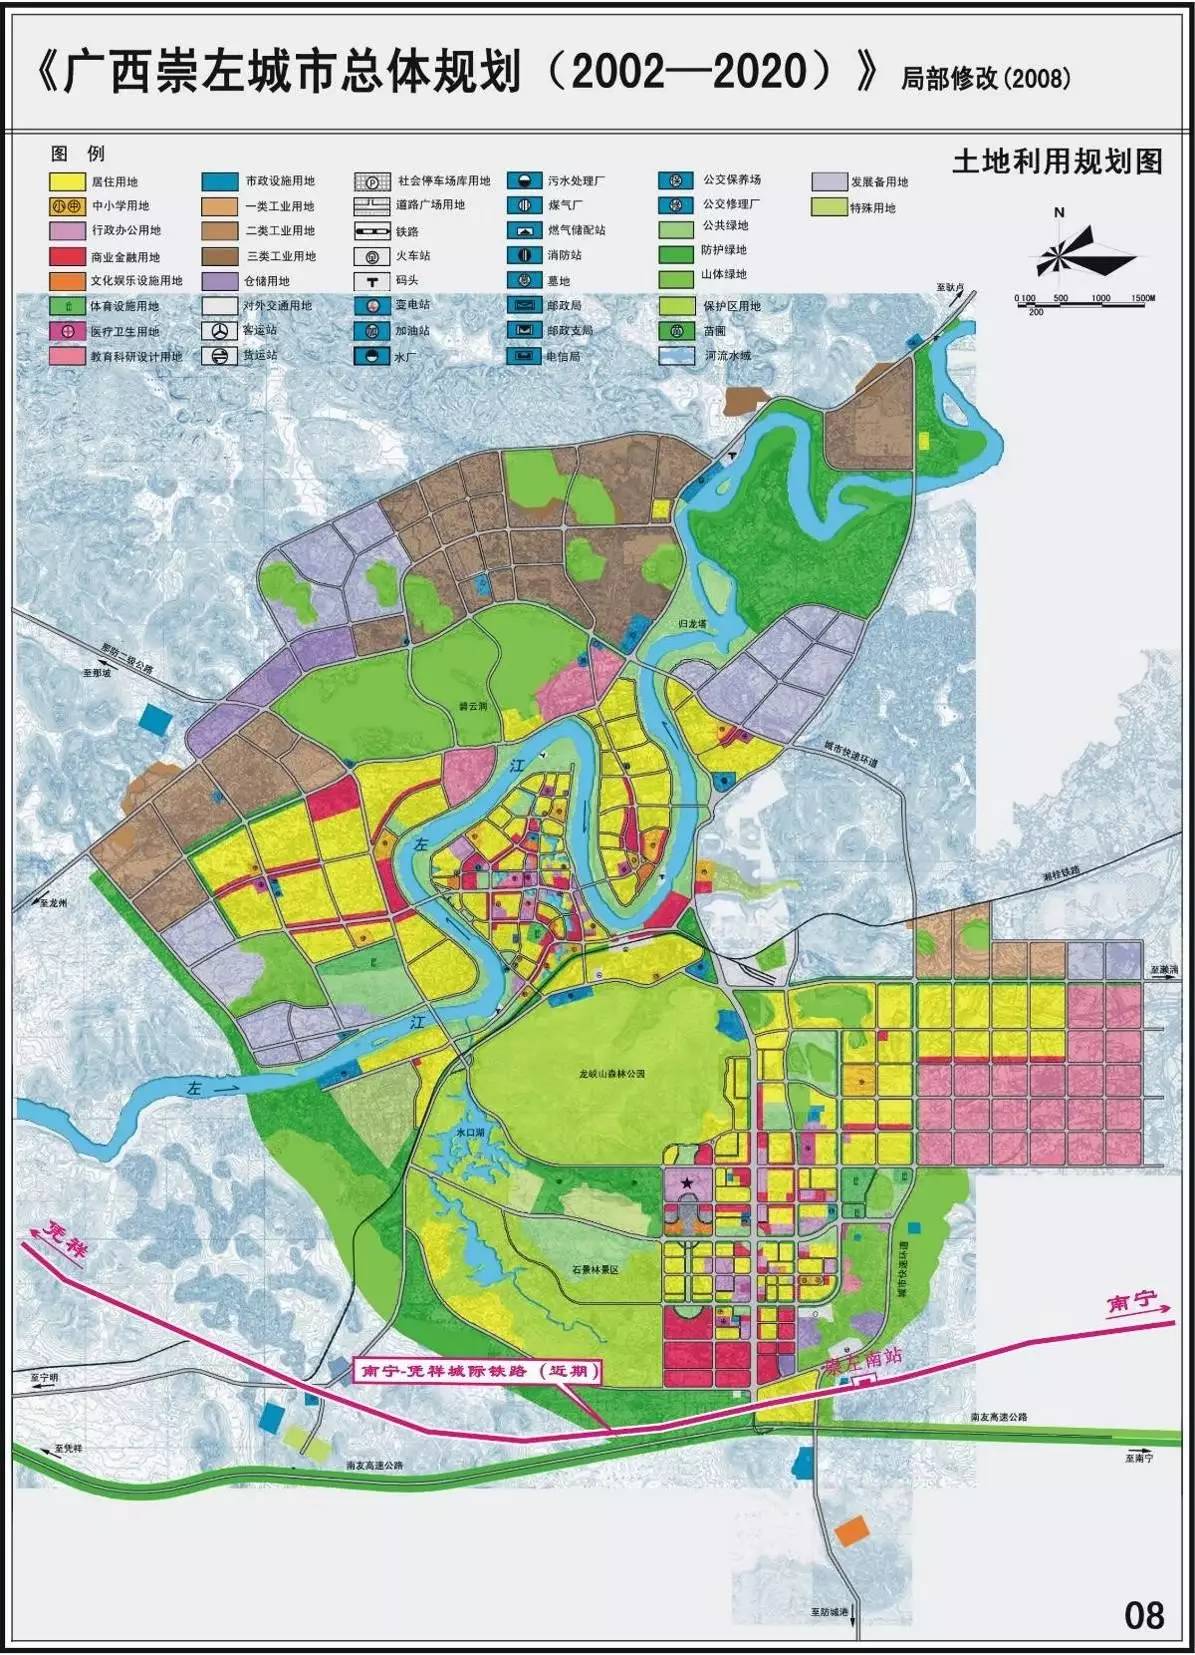 南崇城际铁路与崇左市城市总体规划位置关系示意图 或于2021年建成